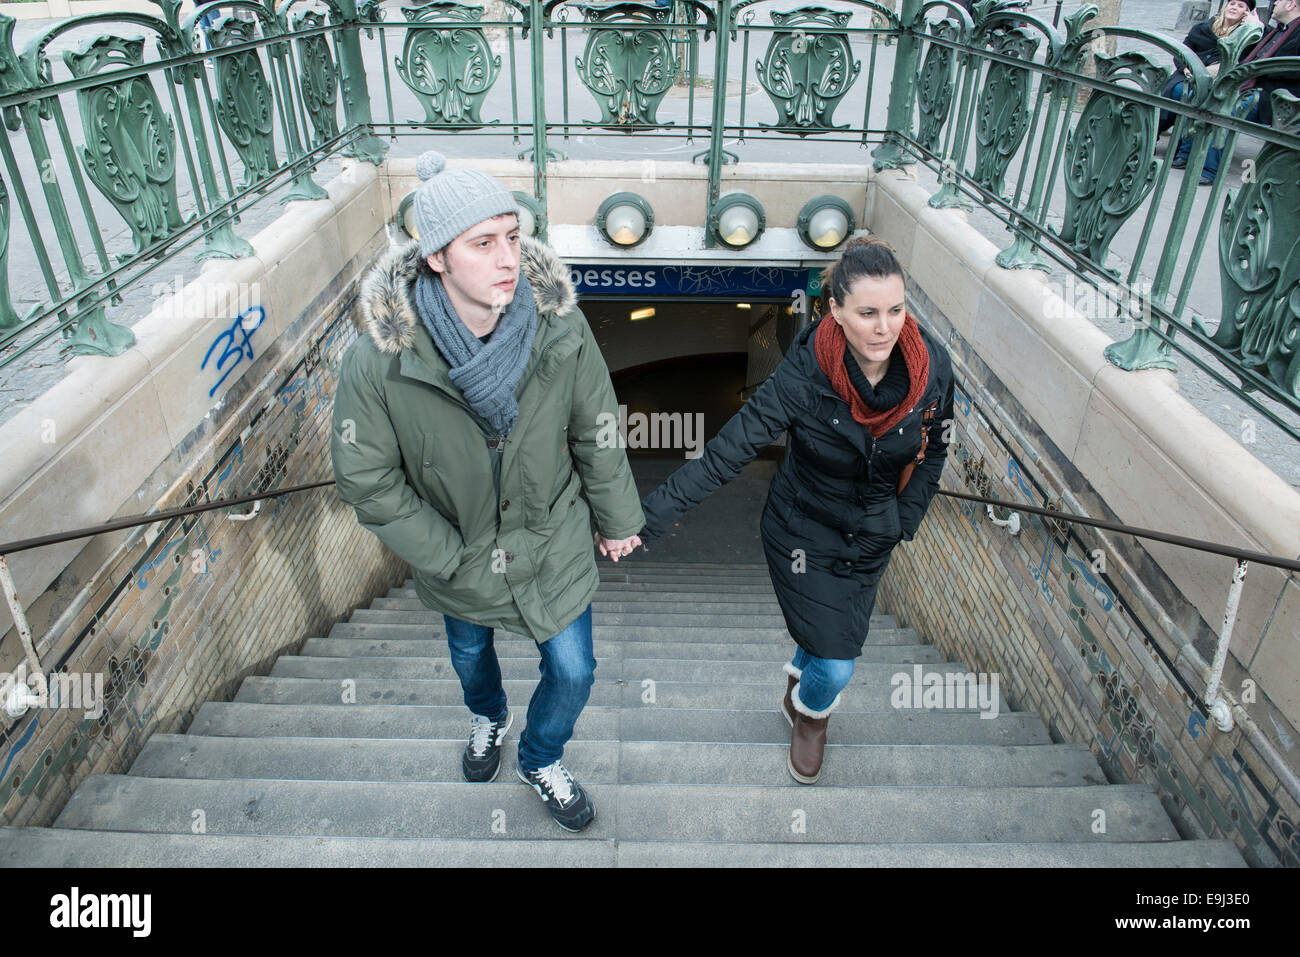 Les touristes et les banlieusards quitter un paris métro gare en hiver avec de grands manteaux sur dus au froid Banque D'Images